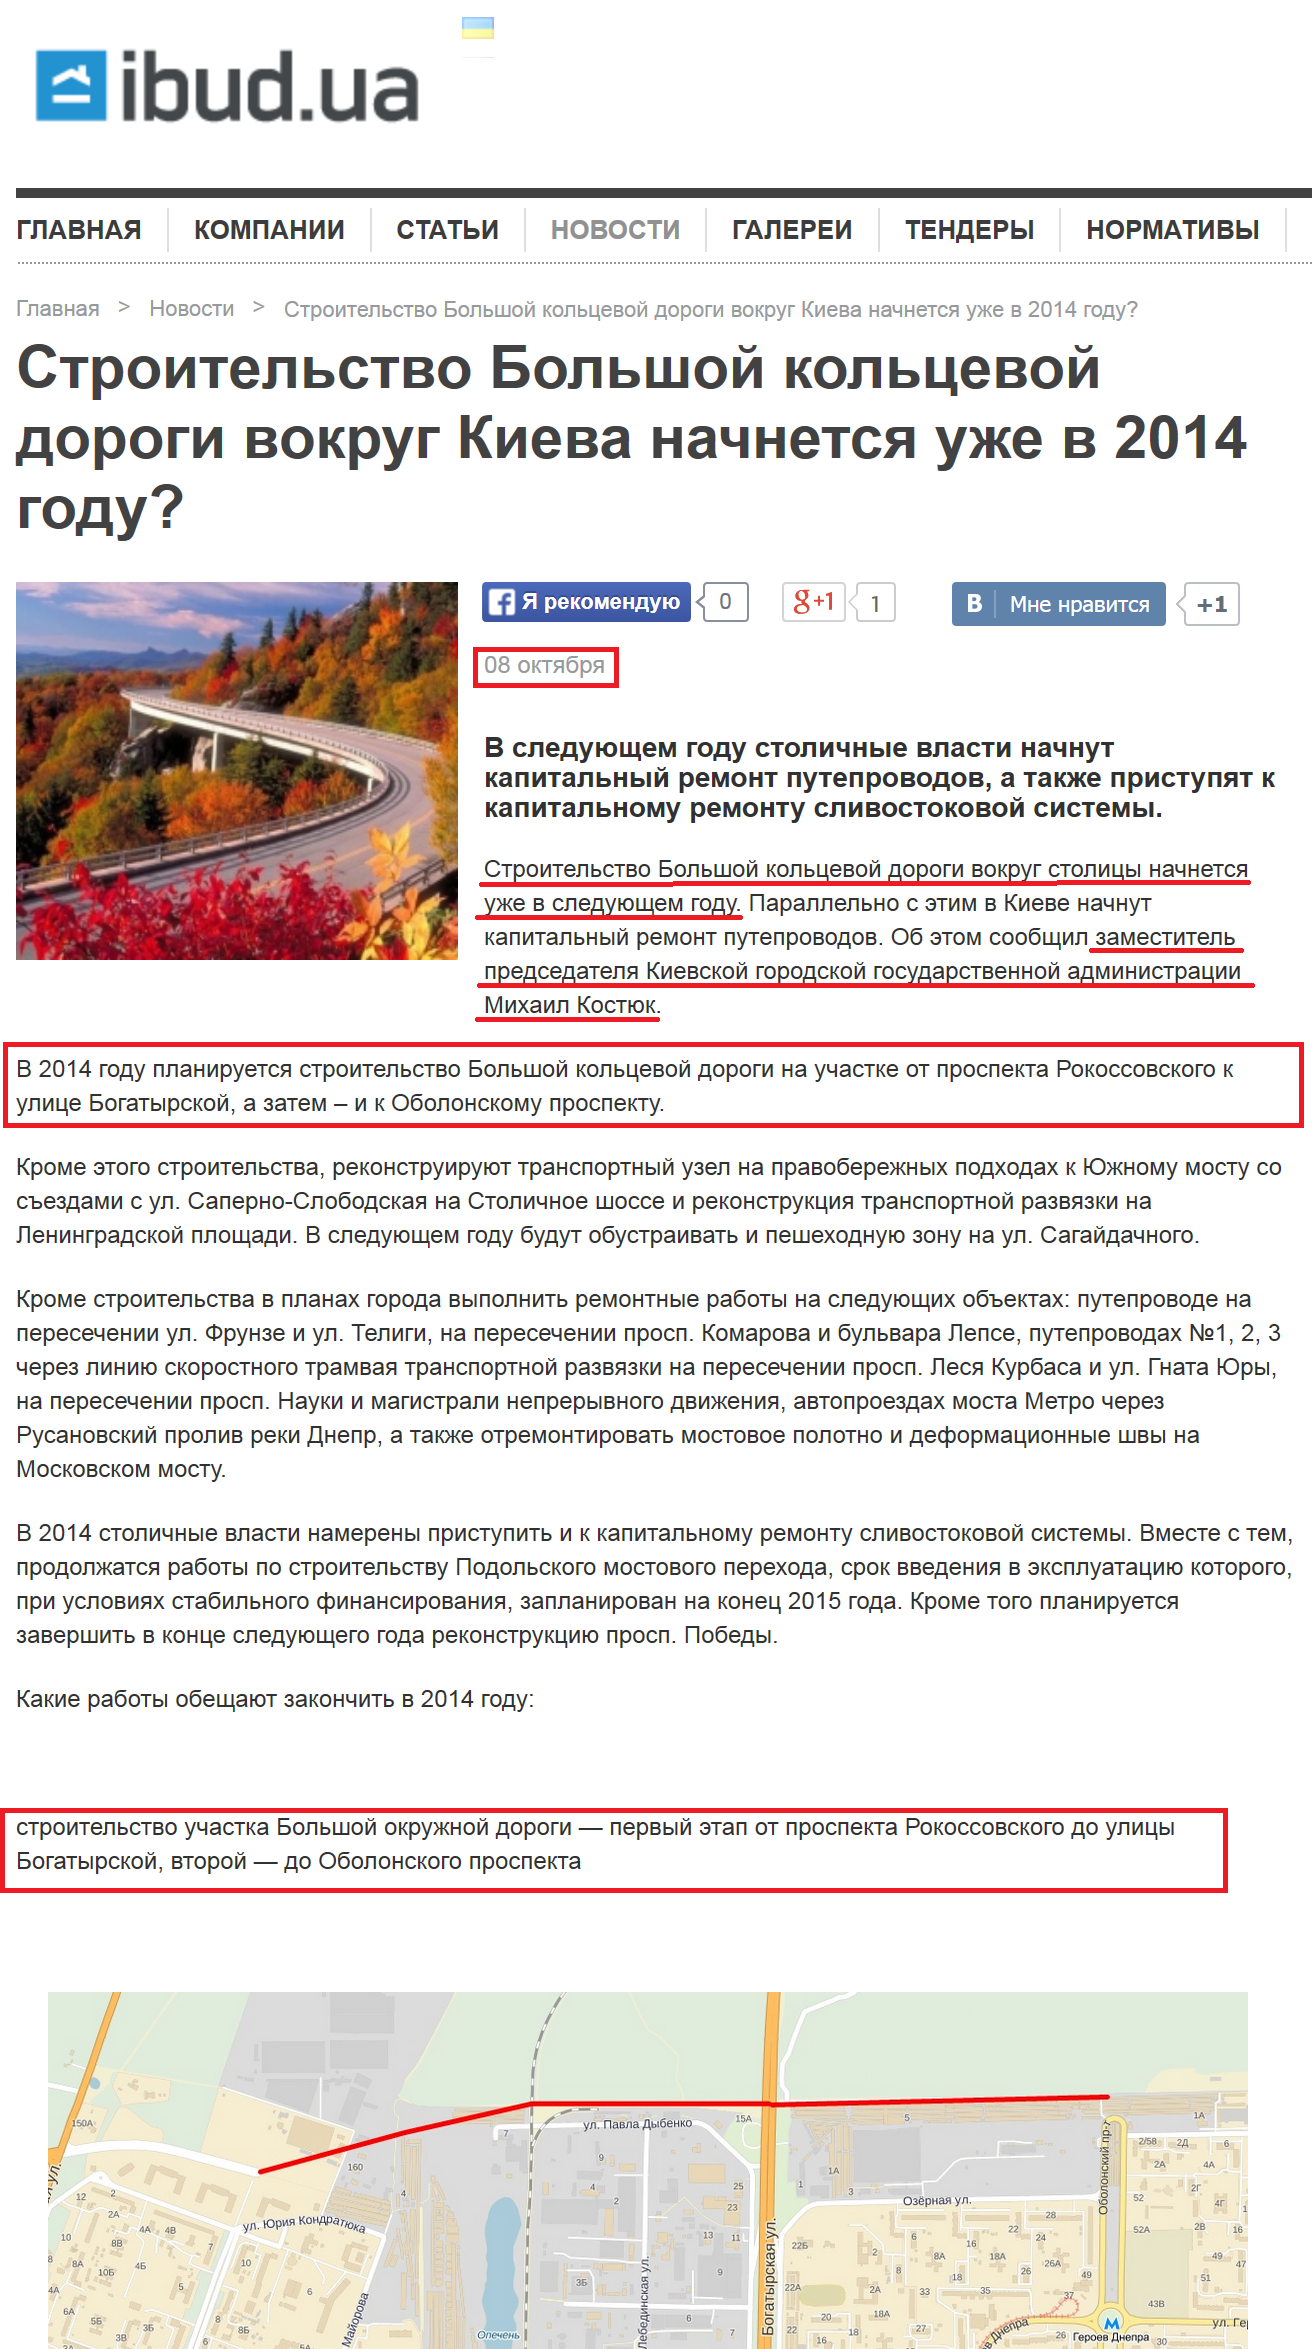 http://ibud.ua/ru/novost/stroitelstvo-bolshoy-koltsevoy-dorogi-vokrug-kieva-nachnetsya-uzhe-v-2014-godu-14915